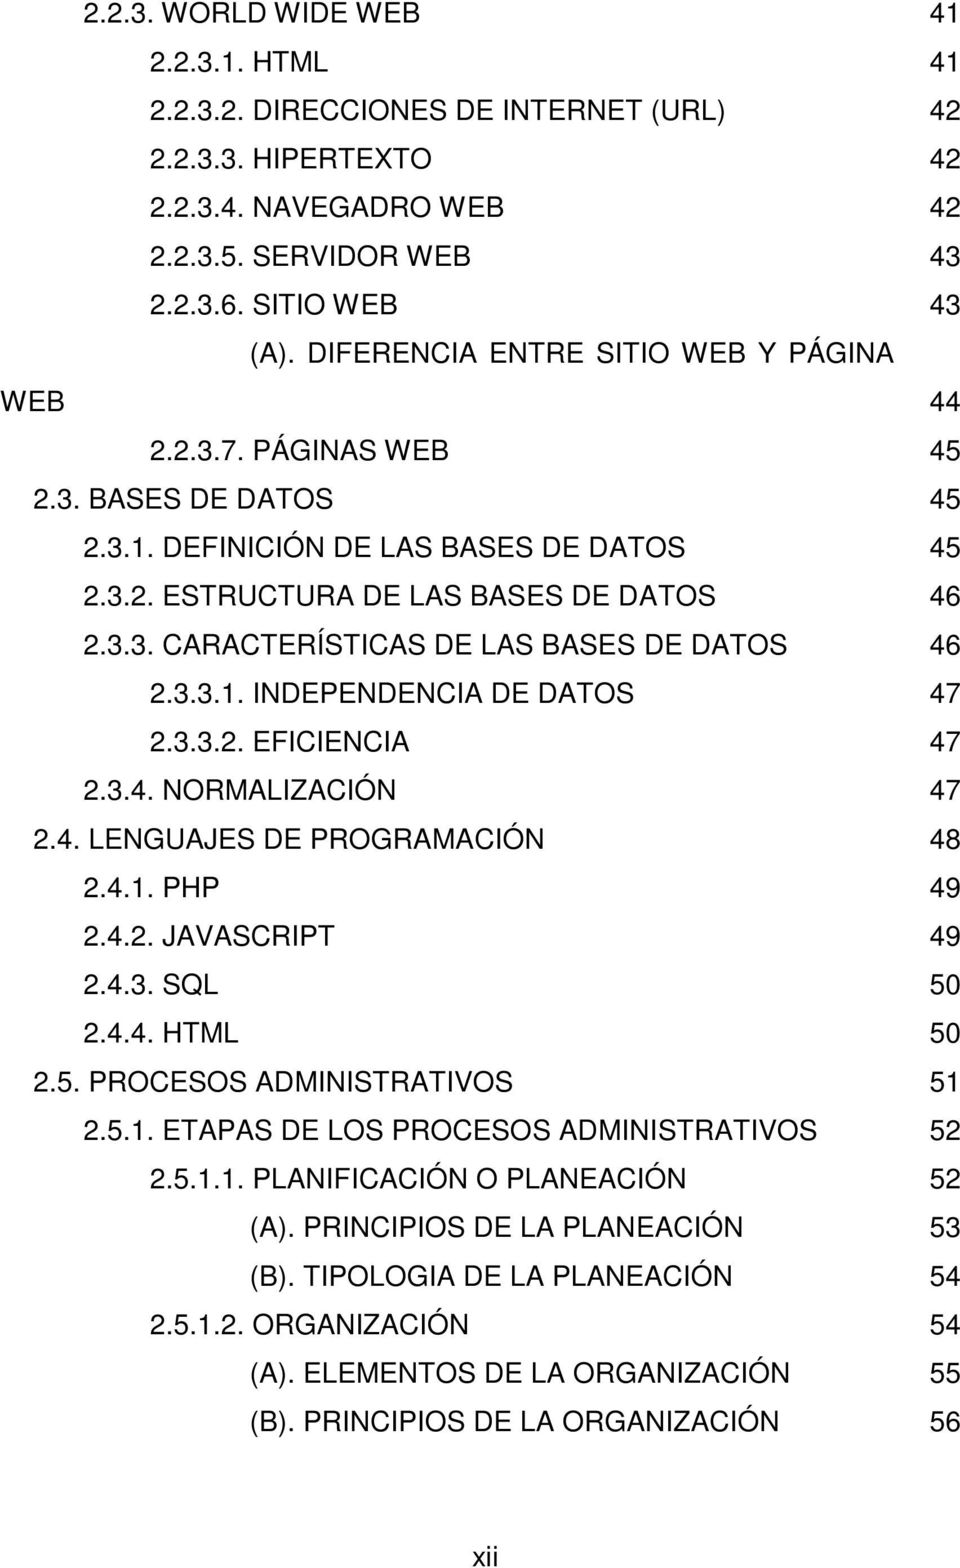 3.3.1. INDEPENDENCIA DE DATOS 47 2.3.3.2. EFICIENCIA 47 2.3.4. NORMALIZACIÓN 47 2.4. LENGUAJES DE PROGRAMACIÓN 48 2.4.1. PHP 49 2.4.2. JAVASCRIPT 49 2.4.3. SQL 50 2.4.4. HTML 50 2.5. PROCESOS ADMINISTRATIVOS 51 2.